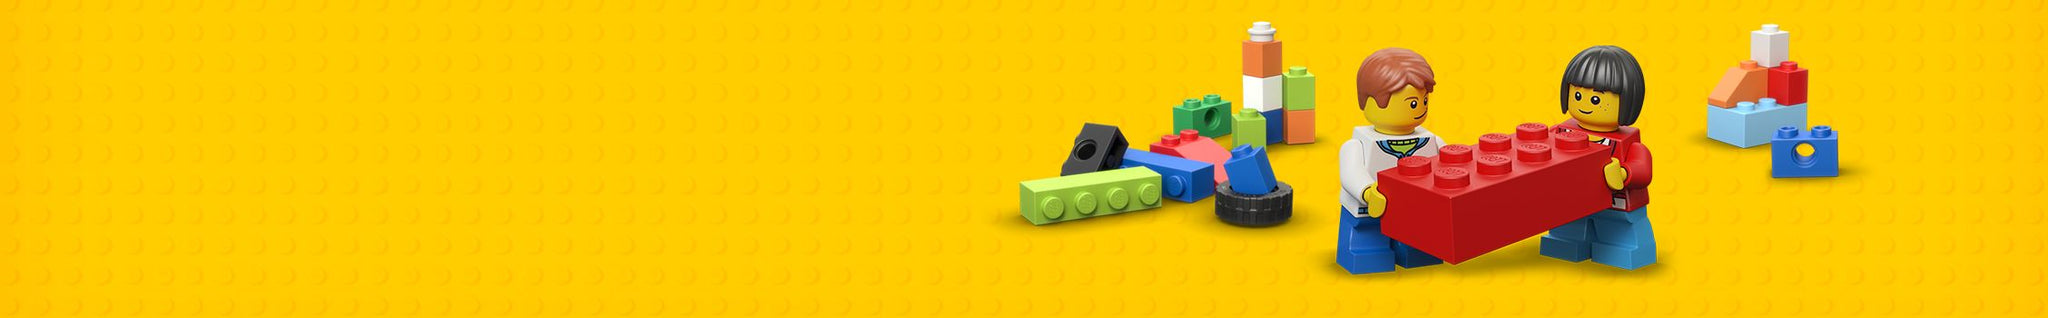 Goedkoop LEGO bestellen bij de LEGO winkel van Nederland